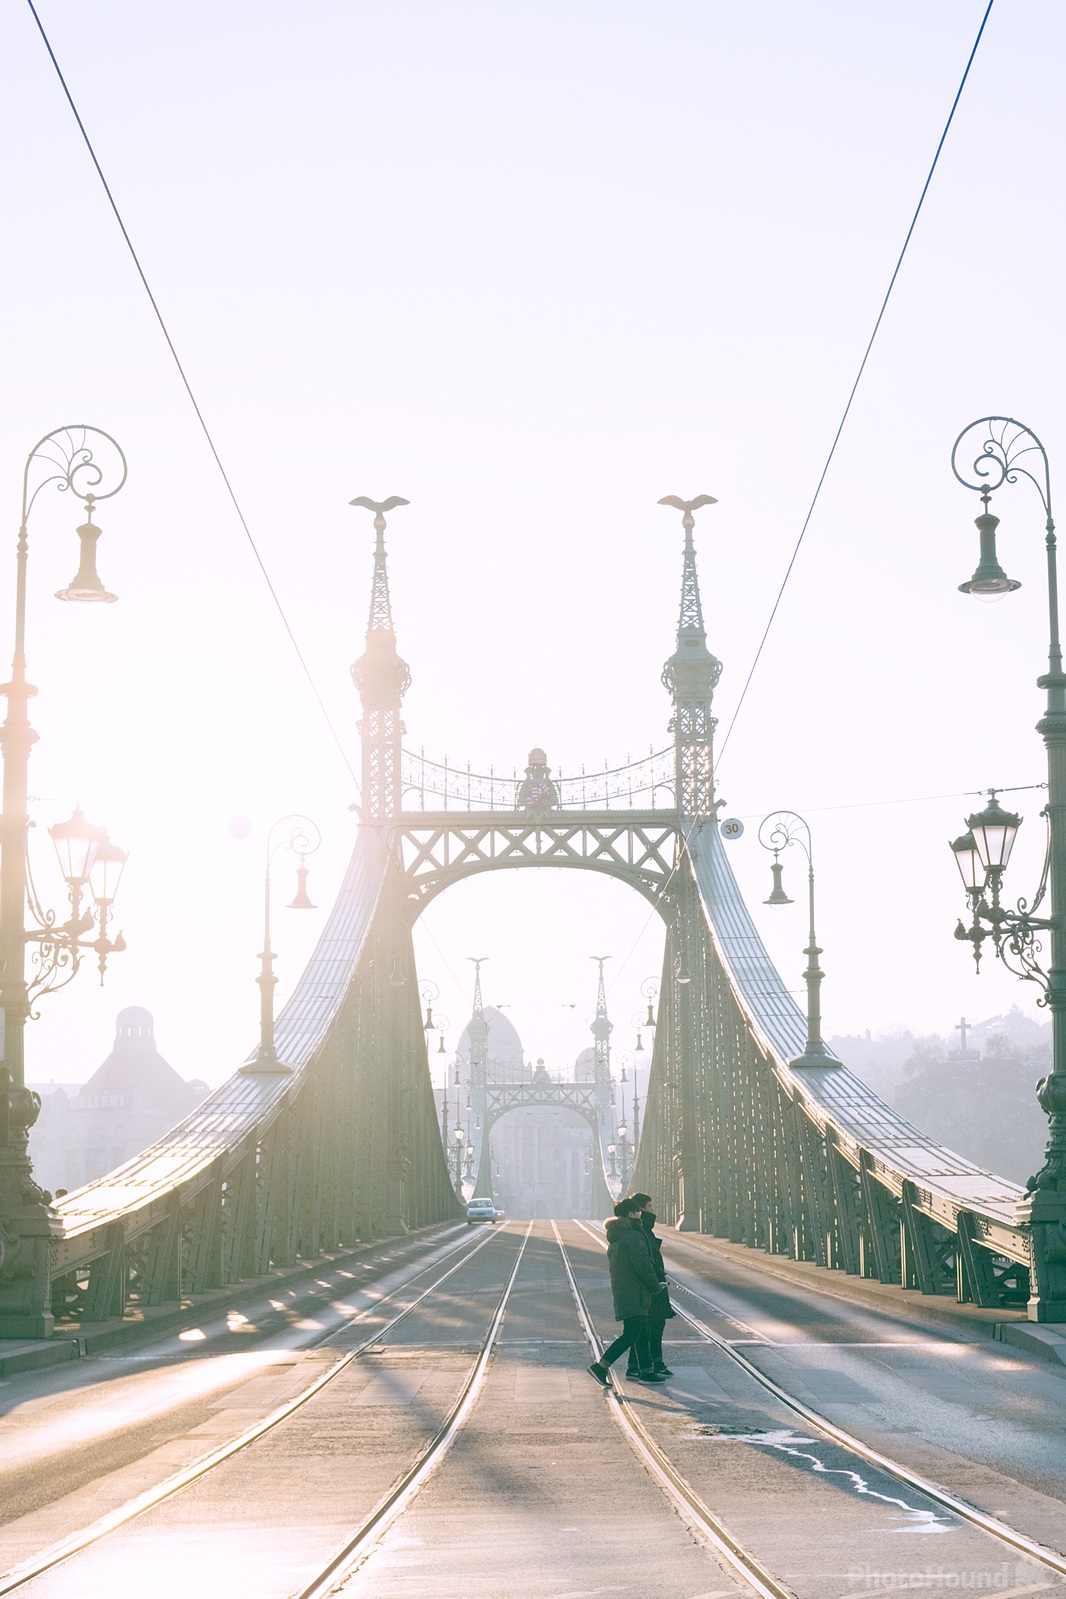 Image of Liberty Bridge (Szabadság Híd) by Team PhotoHound